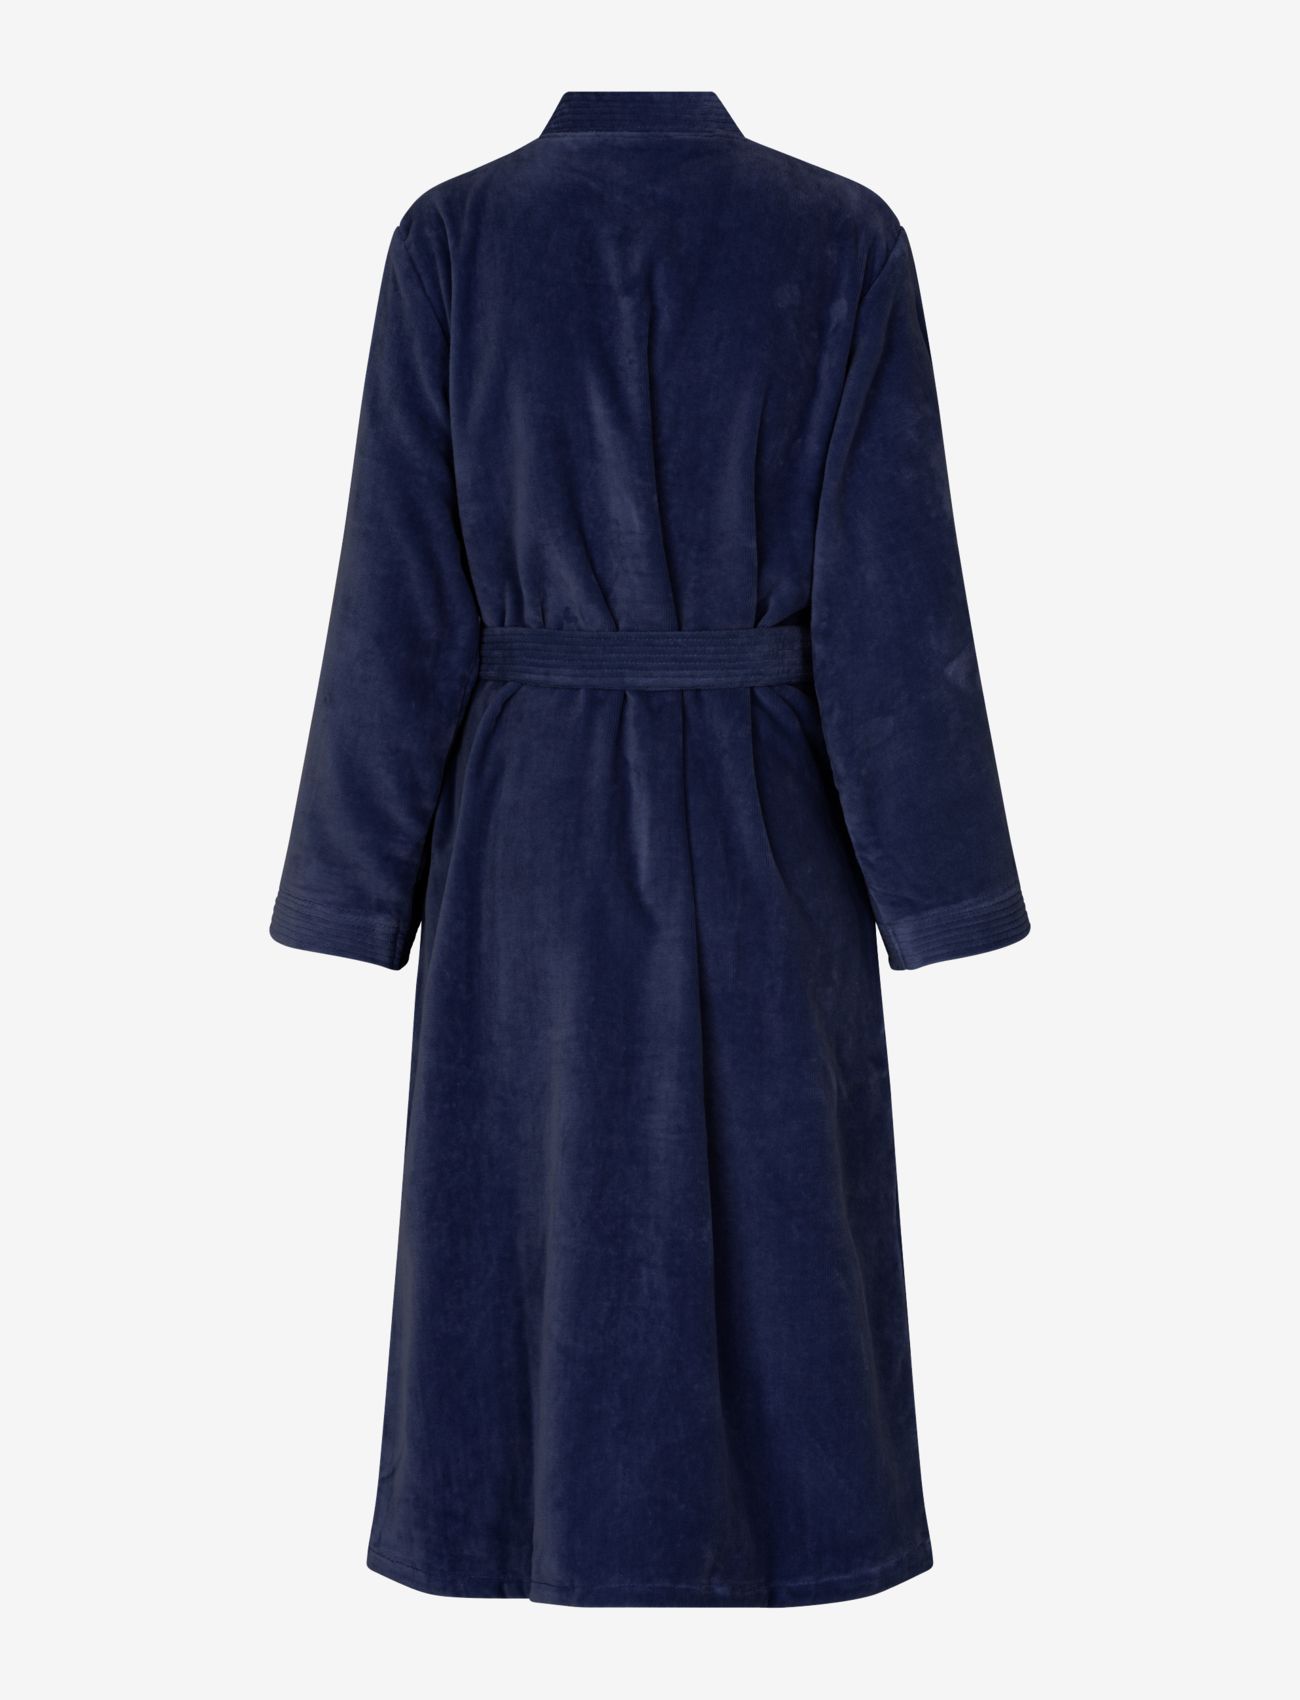 Rosemunde - Organic robe - osta hinna alusel - navy - 1